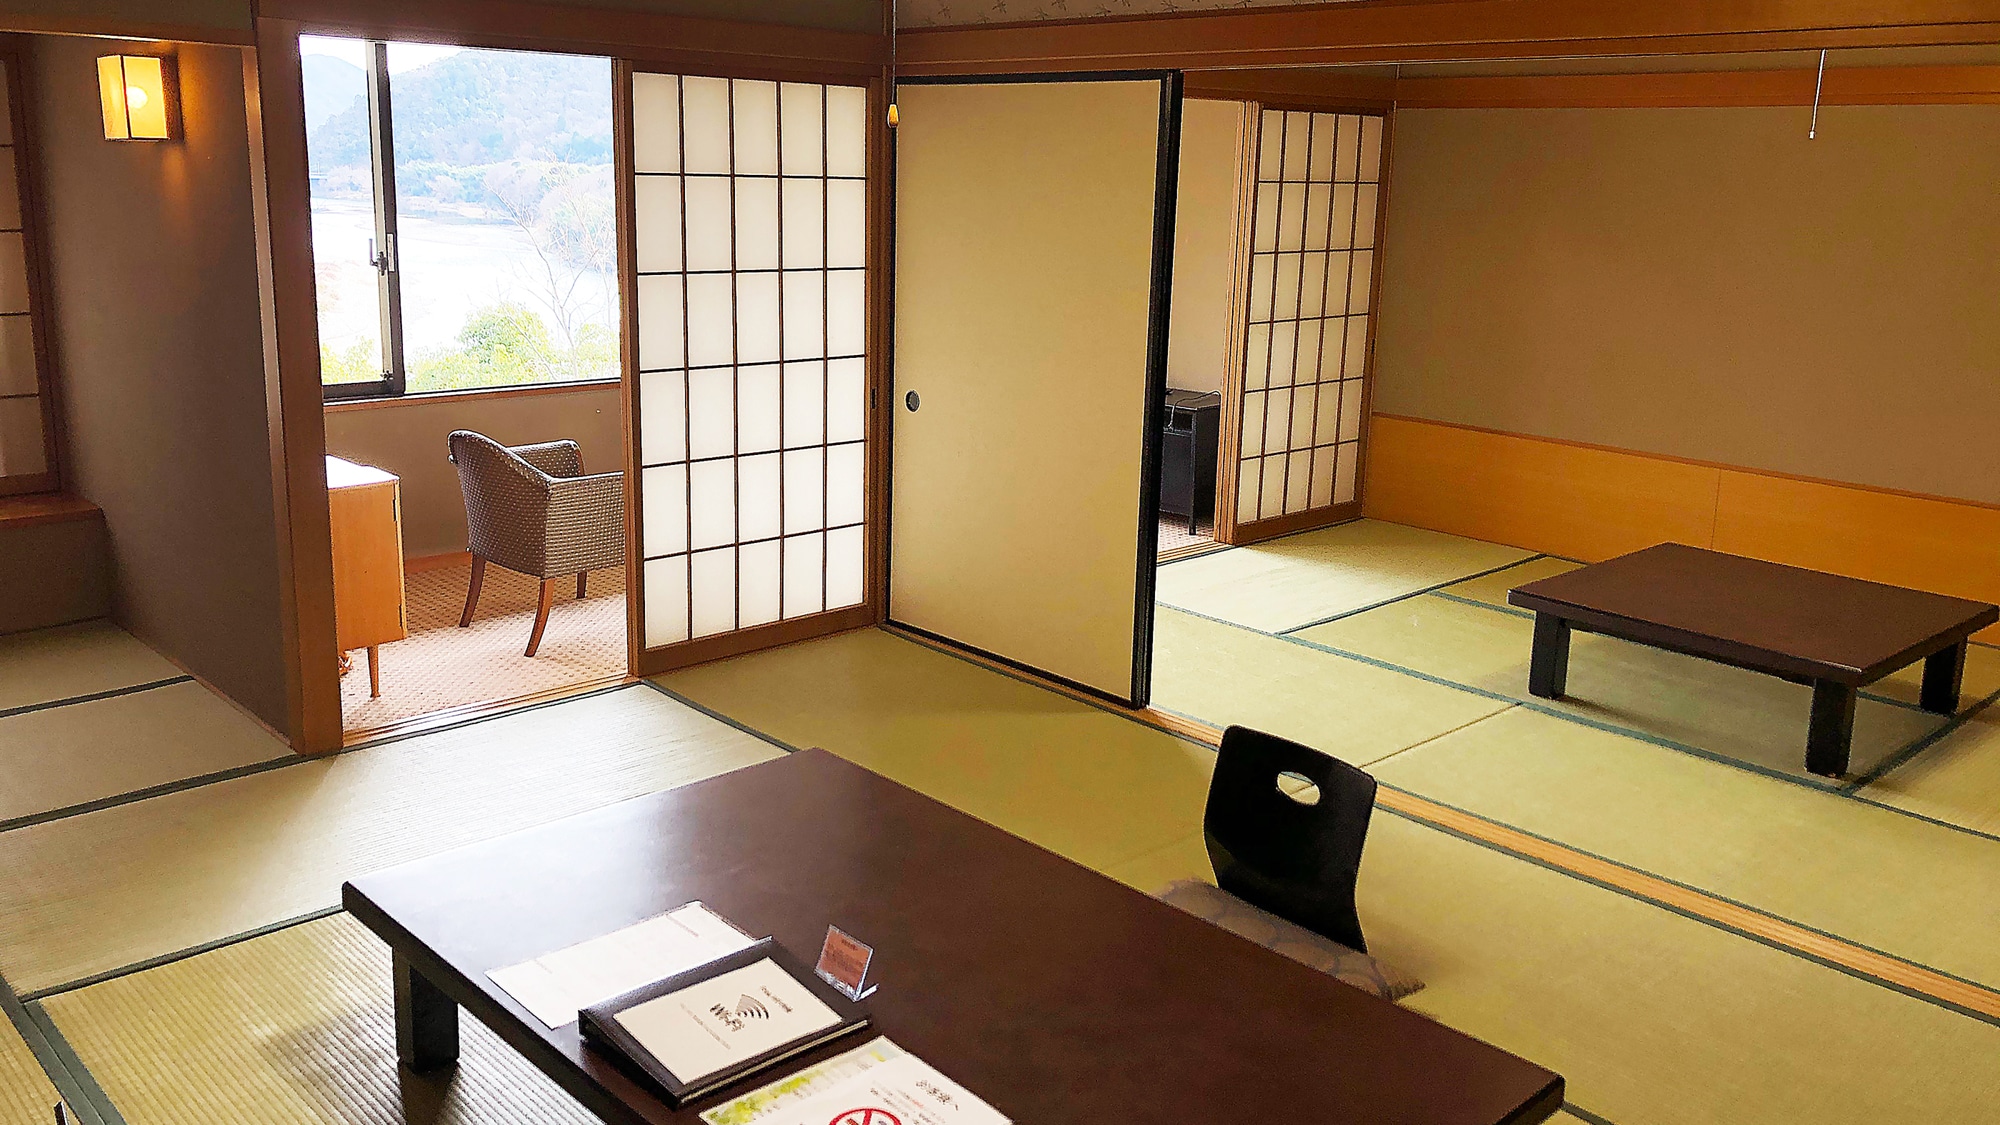 ◆ Japanese-style room B 10 tatami mats + 7.5 tatami mats [No smoking]